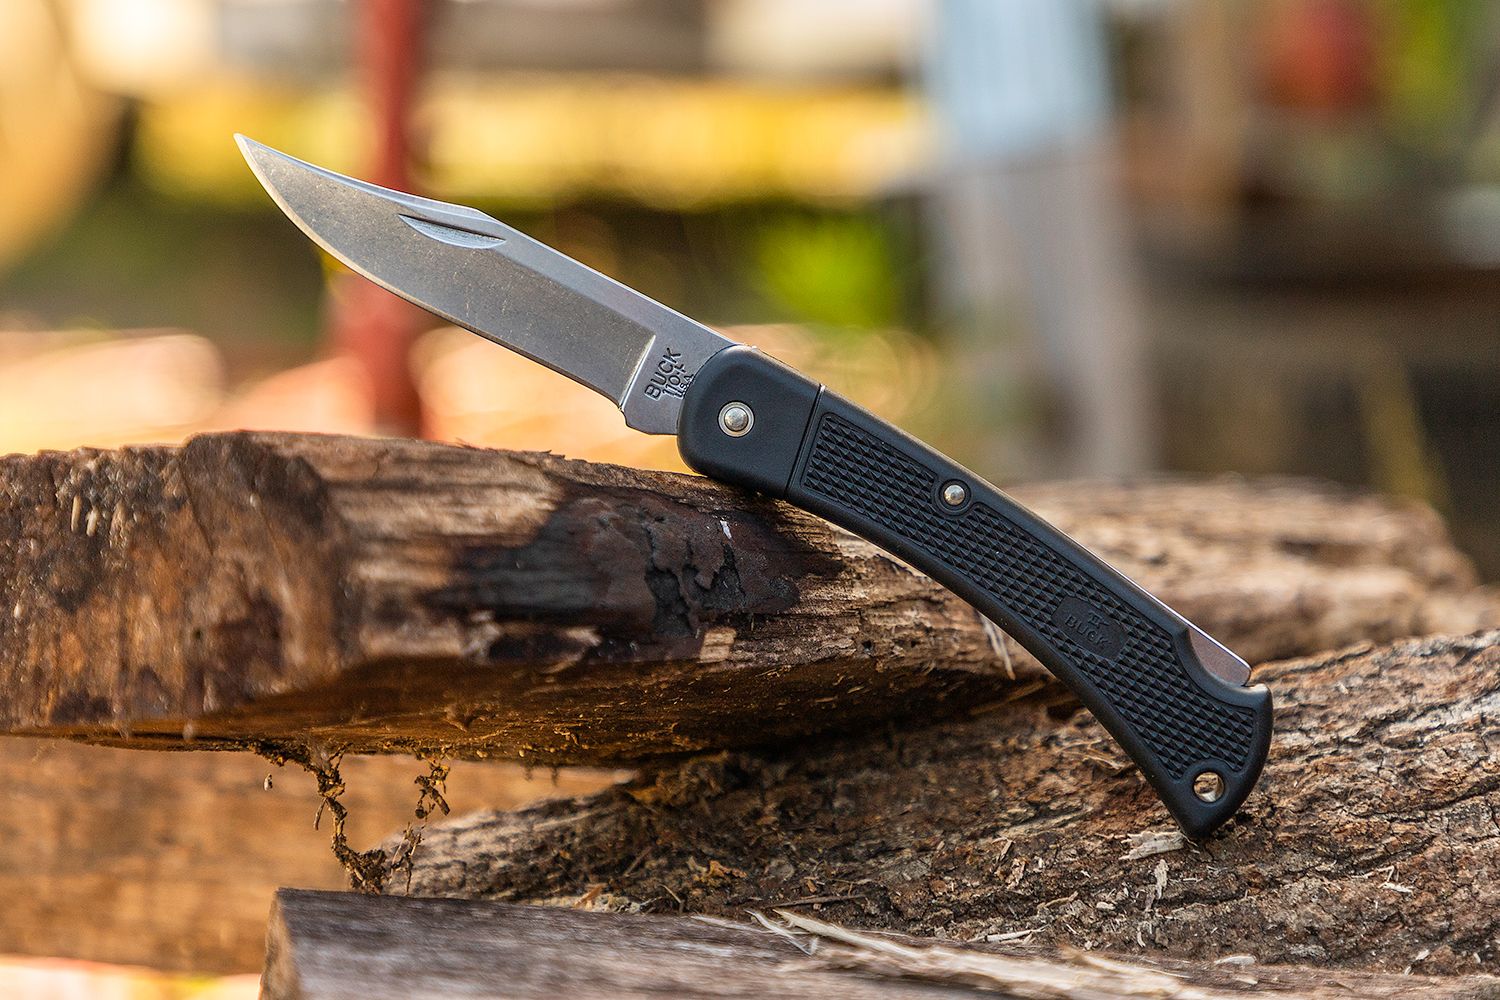 Buck 110 Folding Hunter LT 3.75 Plain Blade, Black Nylon Handles,  Polyester Sheath - KnifeCenter - 11553